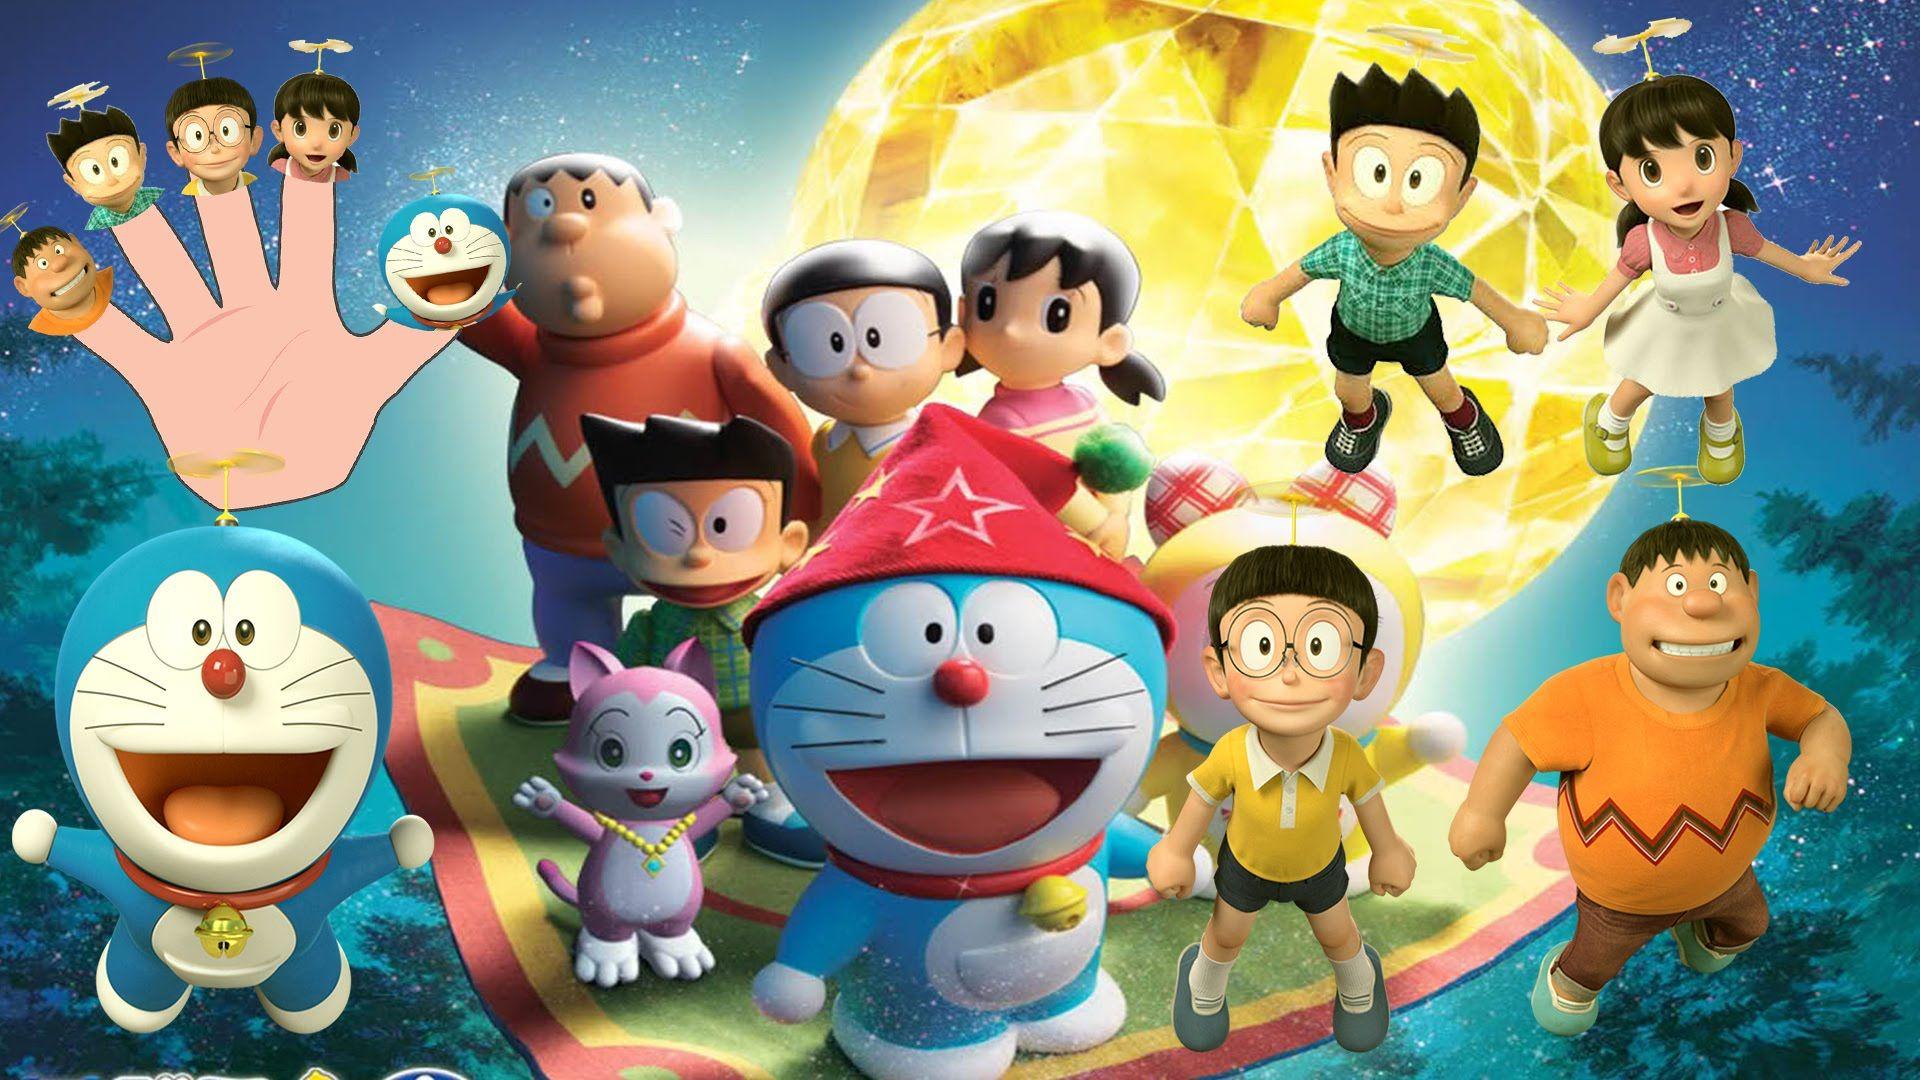  Doraemon  3D  Wallpapers  Top Free  Doraemon  3D  Backgrounds  